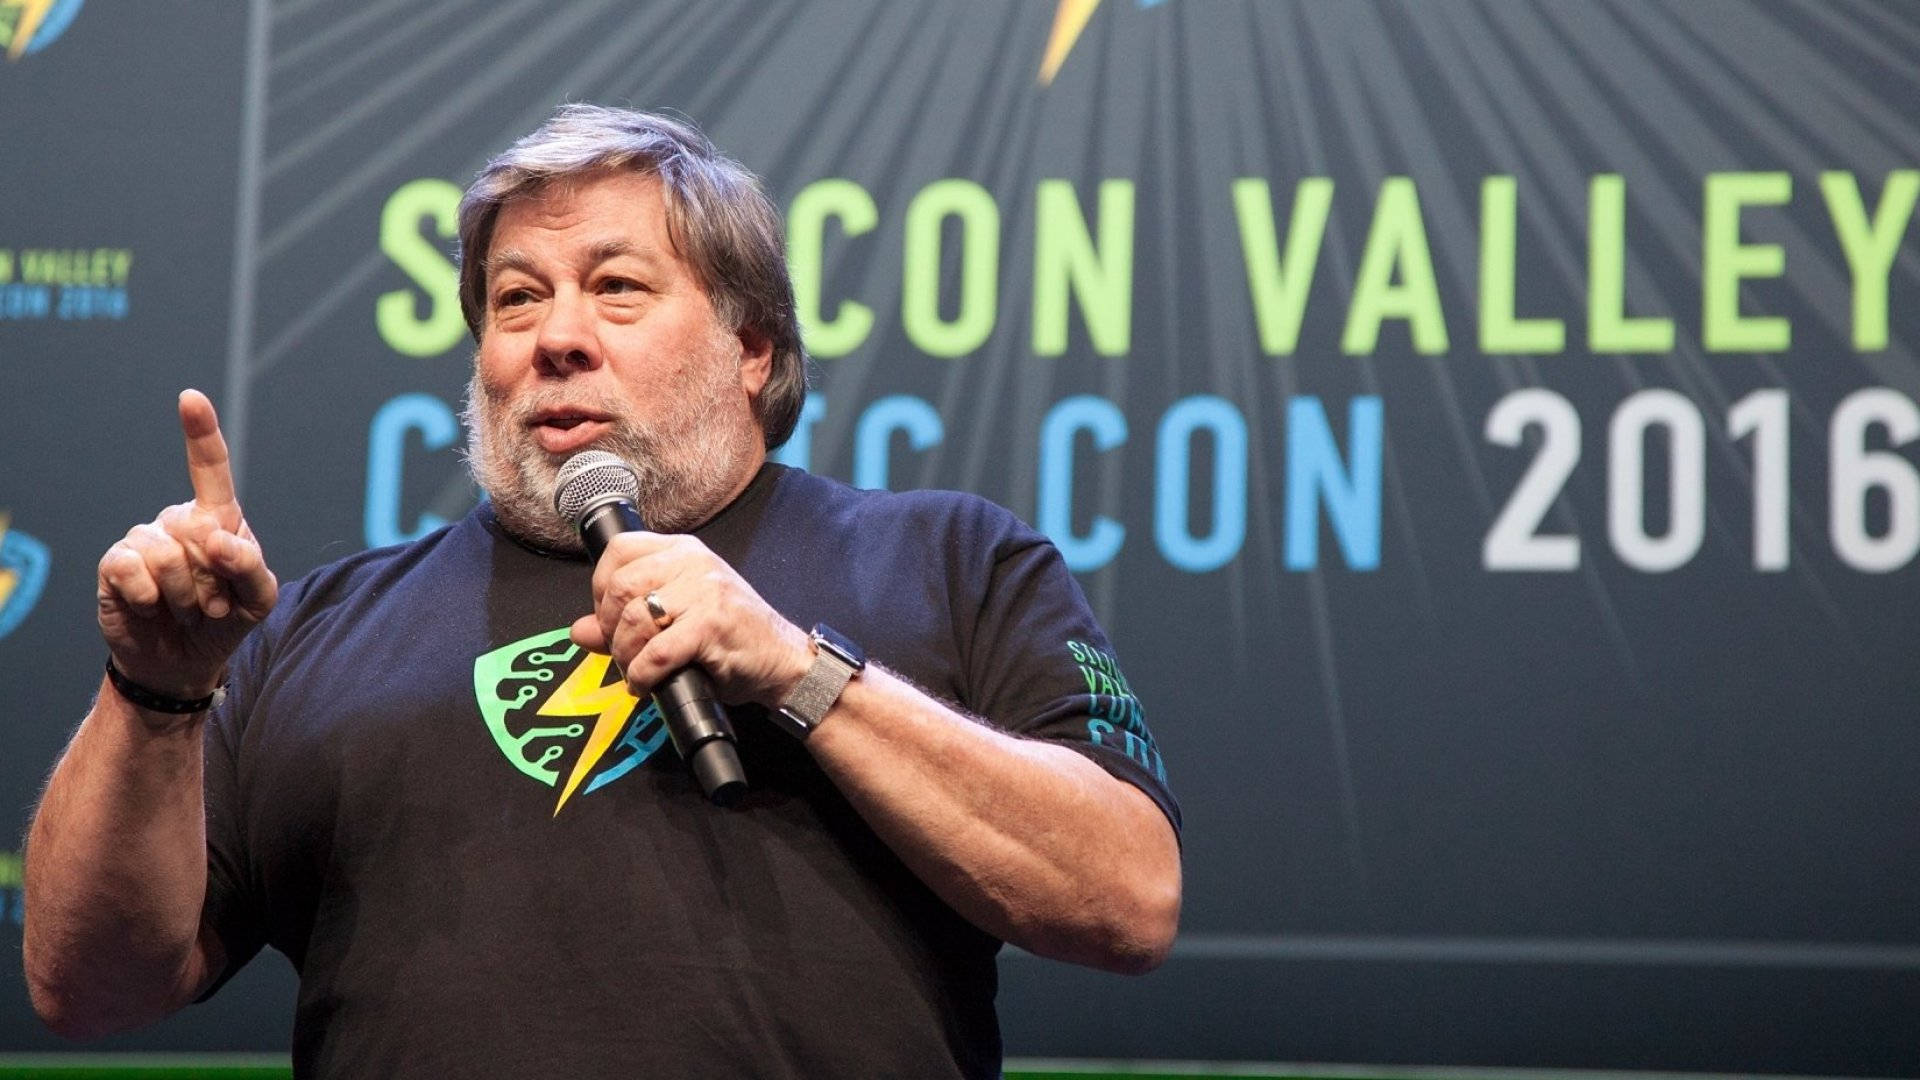 Stevewozniak En Silicon Valley Comic Con 2016 Fondo de pantalla